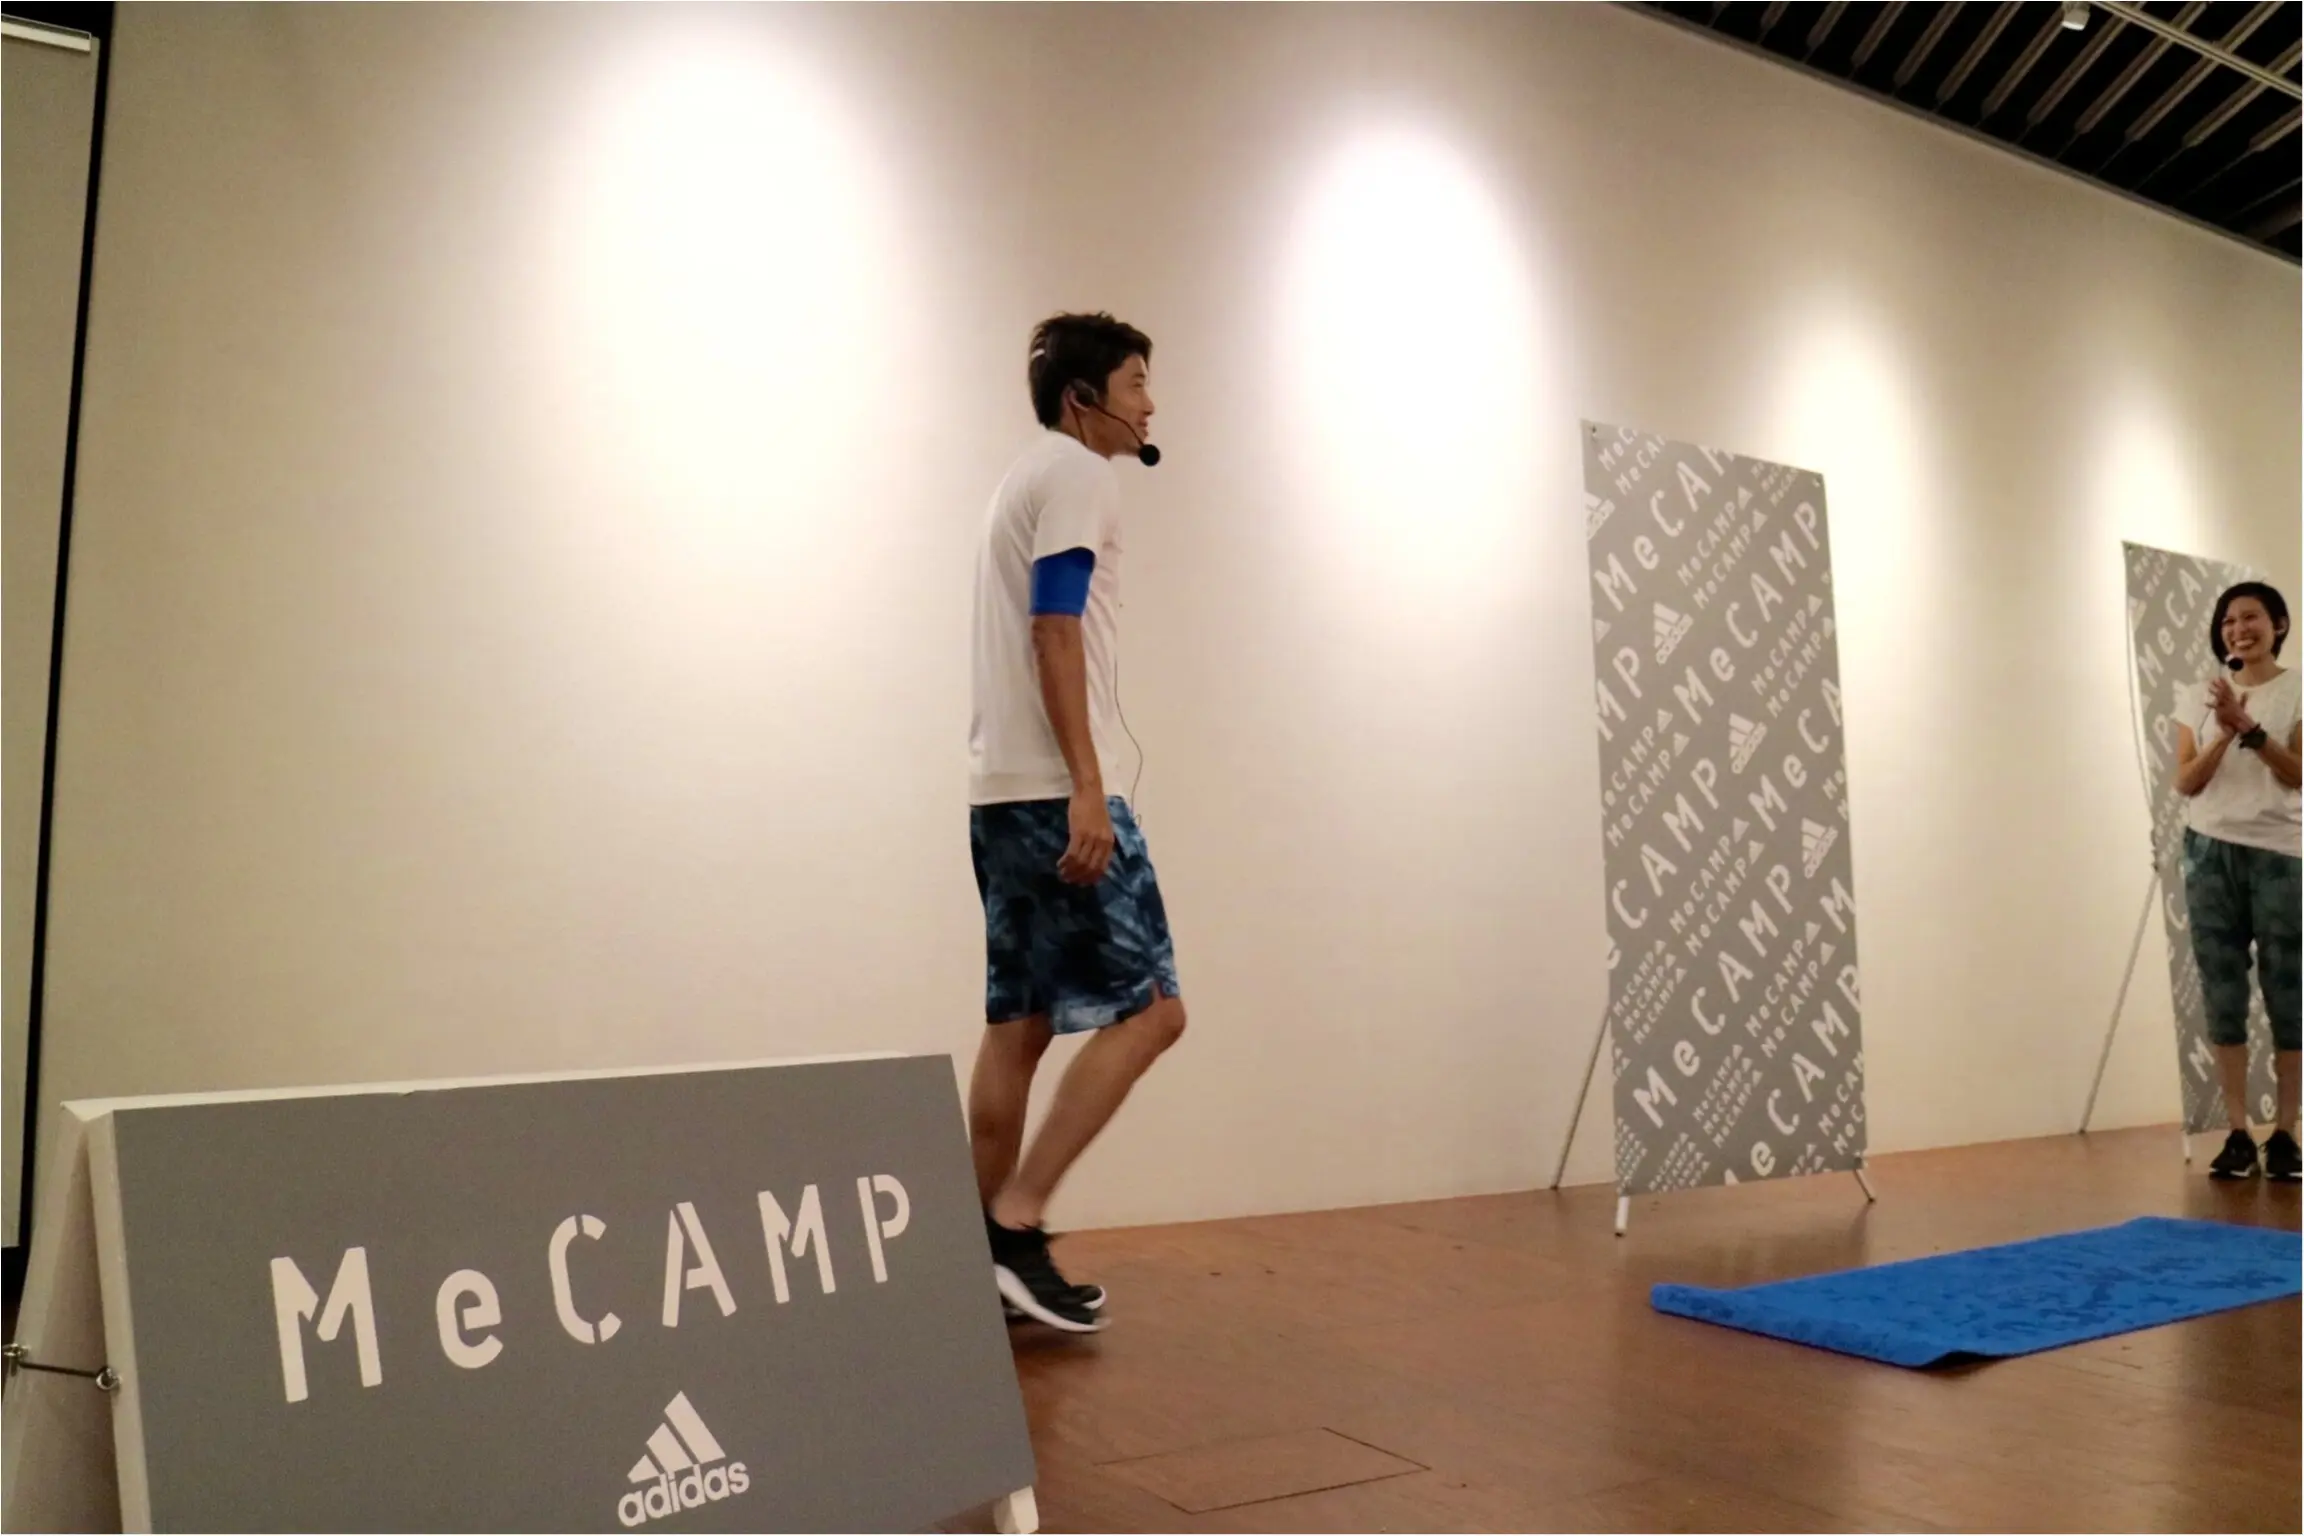 内田篤人選手と一緒にヨガ体験 プチインタビューも アディダス Mecamp スペシャルプログラムに潜入 ファッション コーディネート 代 Daily More